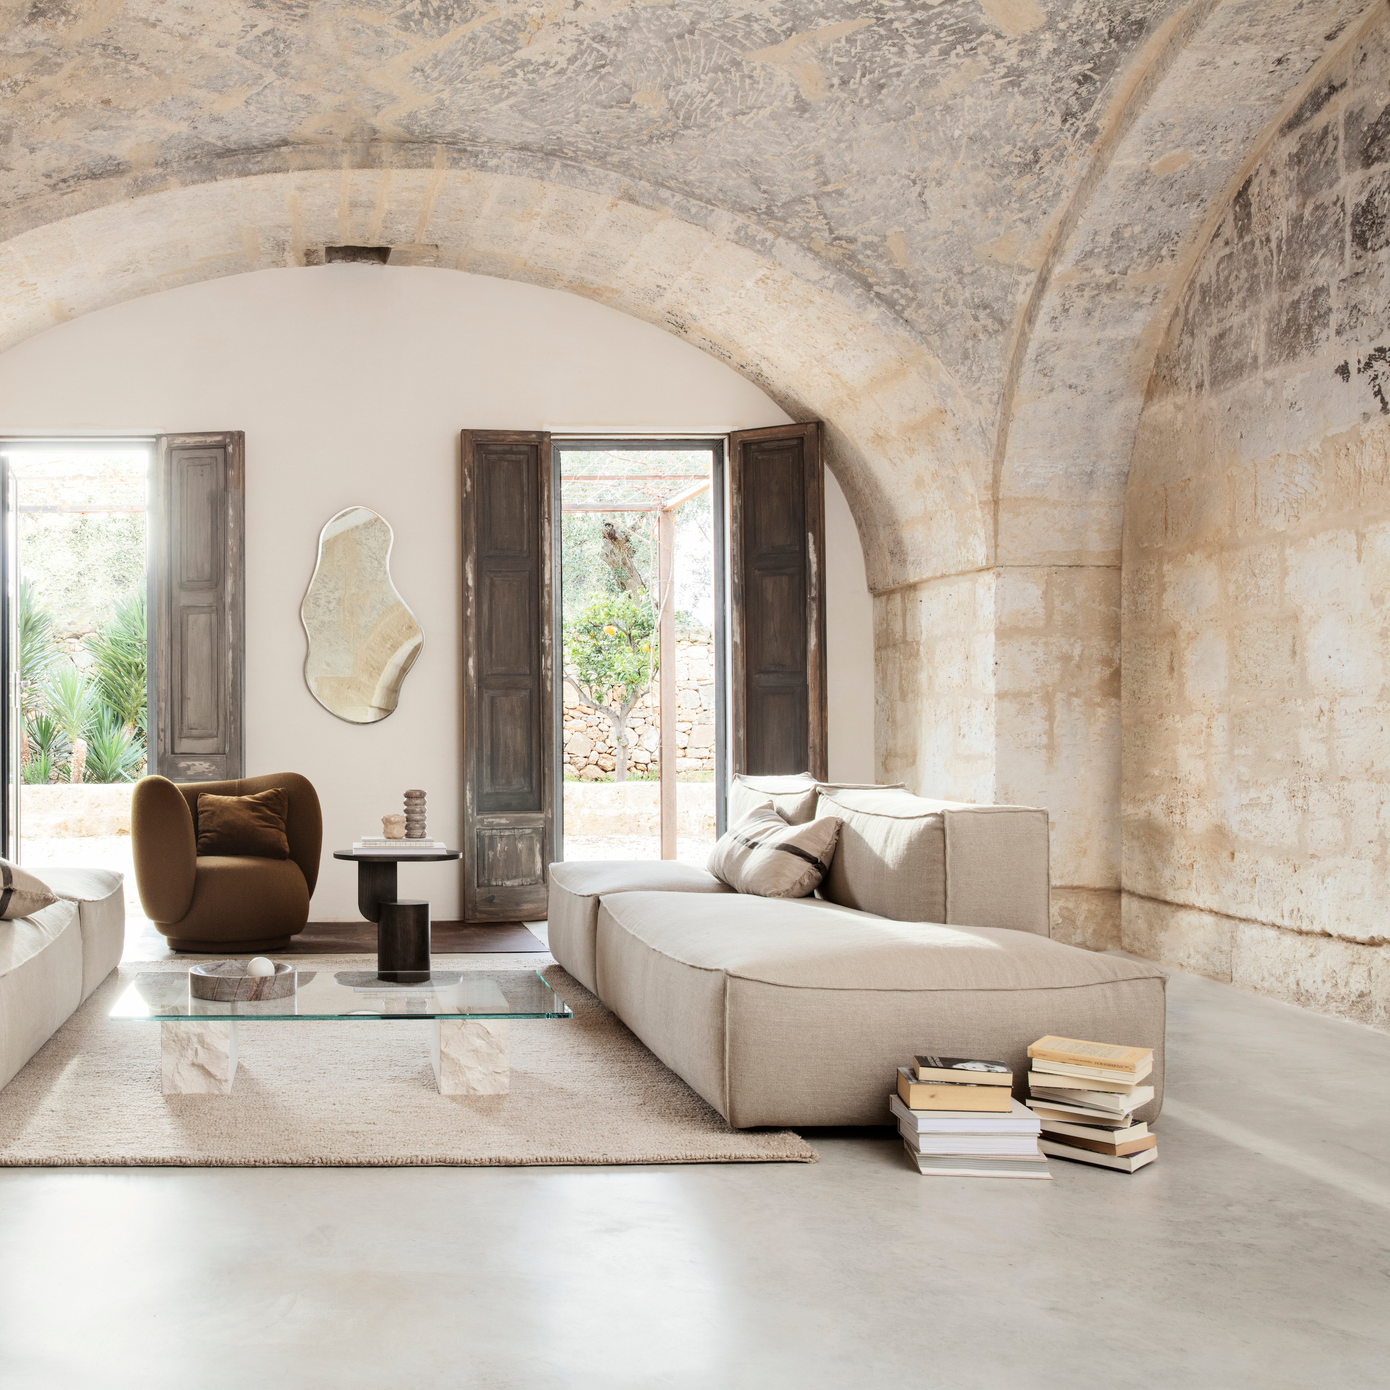 Ausstellungsstück Catena 3er Sofa mit Pouf - KAQTU Design